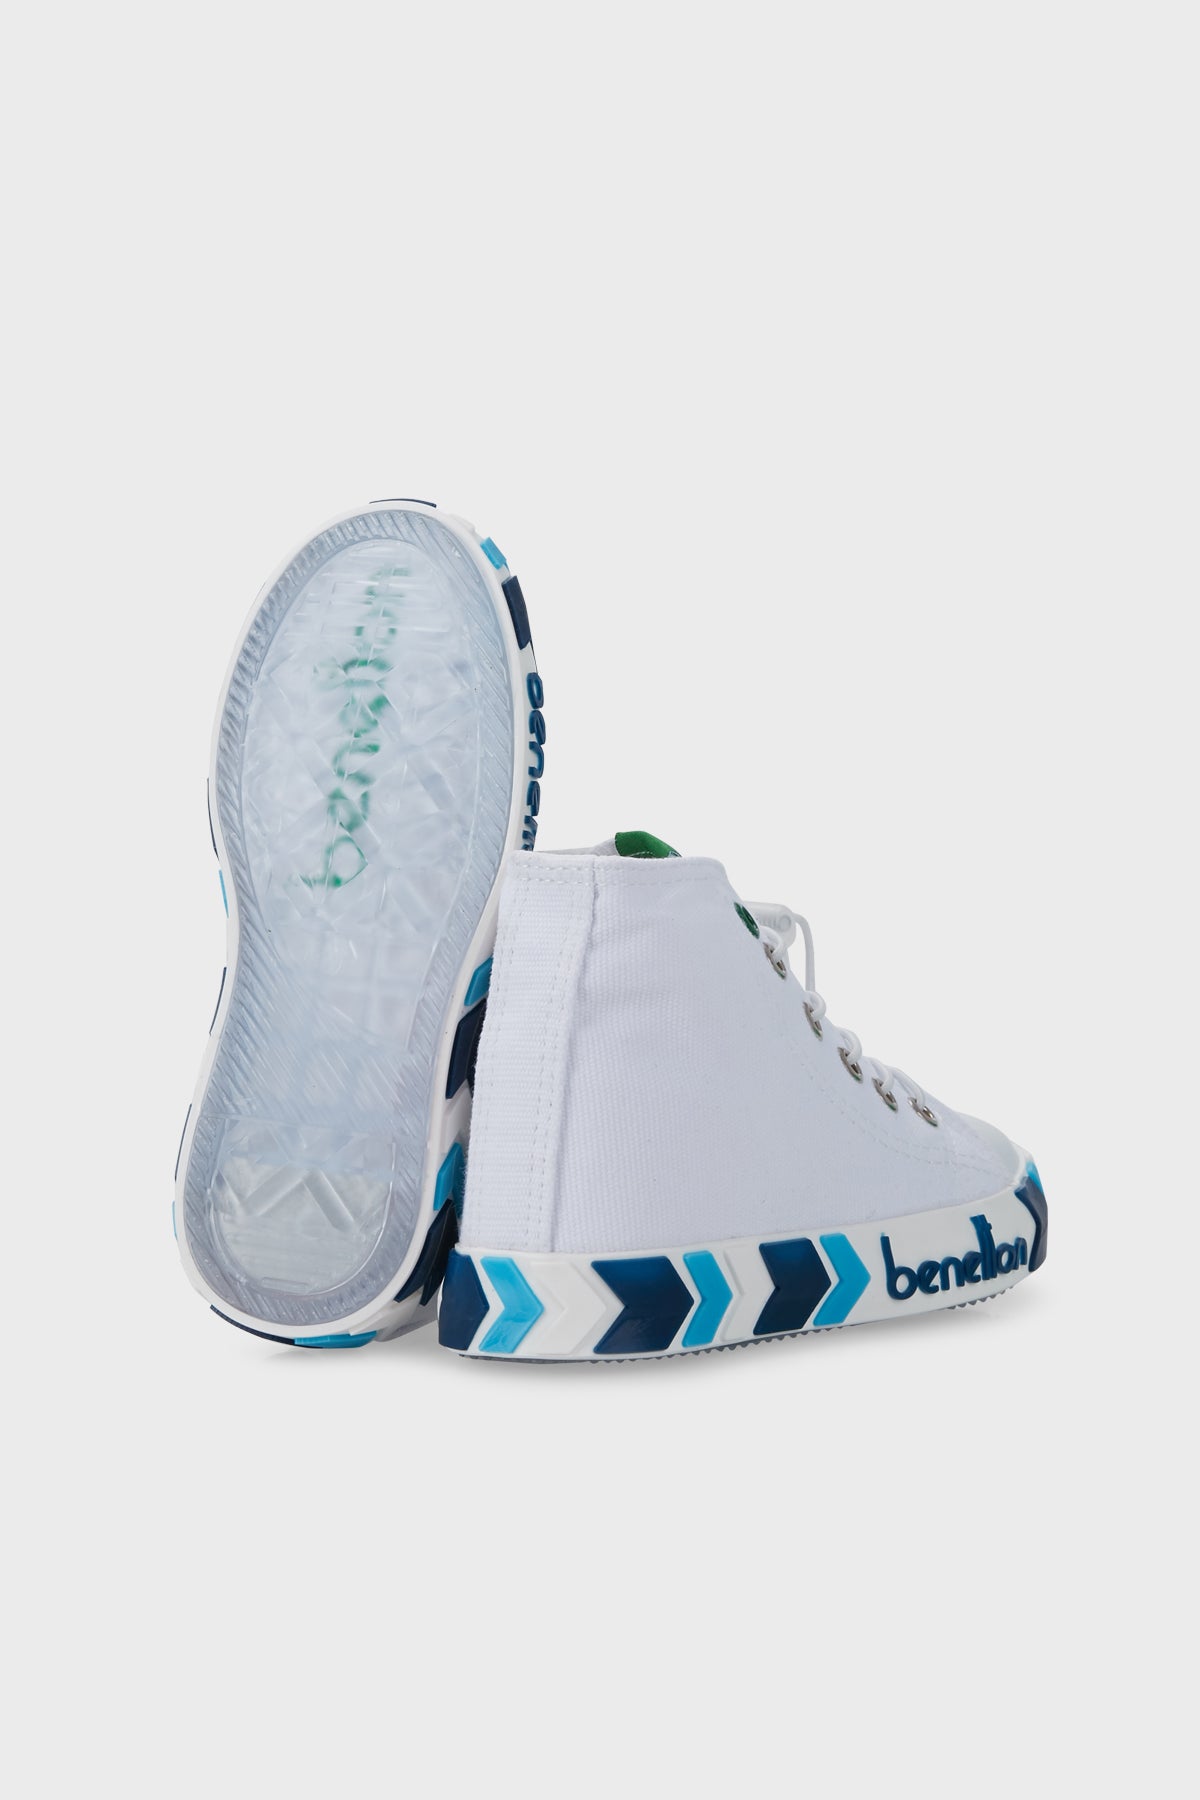 United Colors Of Benetton Bilekli Sneaker Unisex Çocuk Ayakkabı BN-30647 BEYAZ-LACİVERT